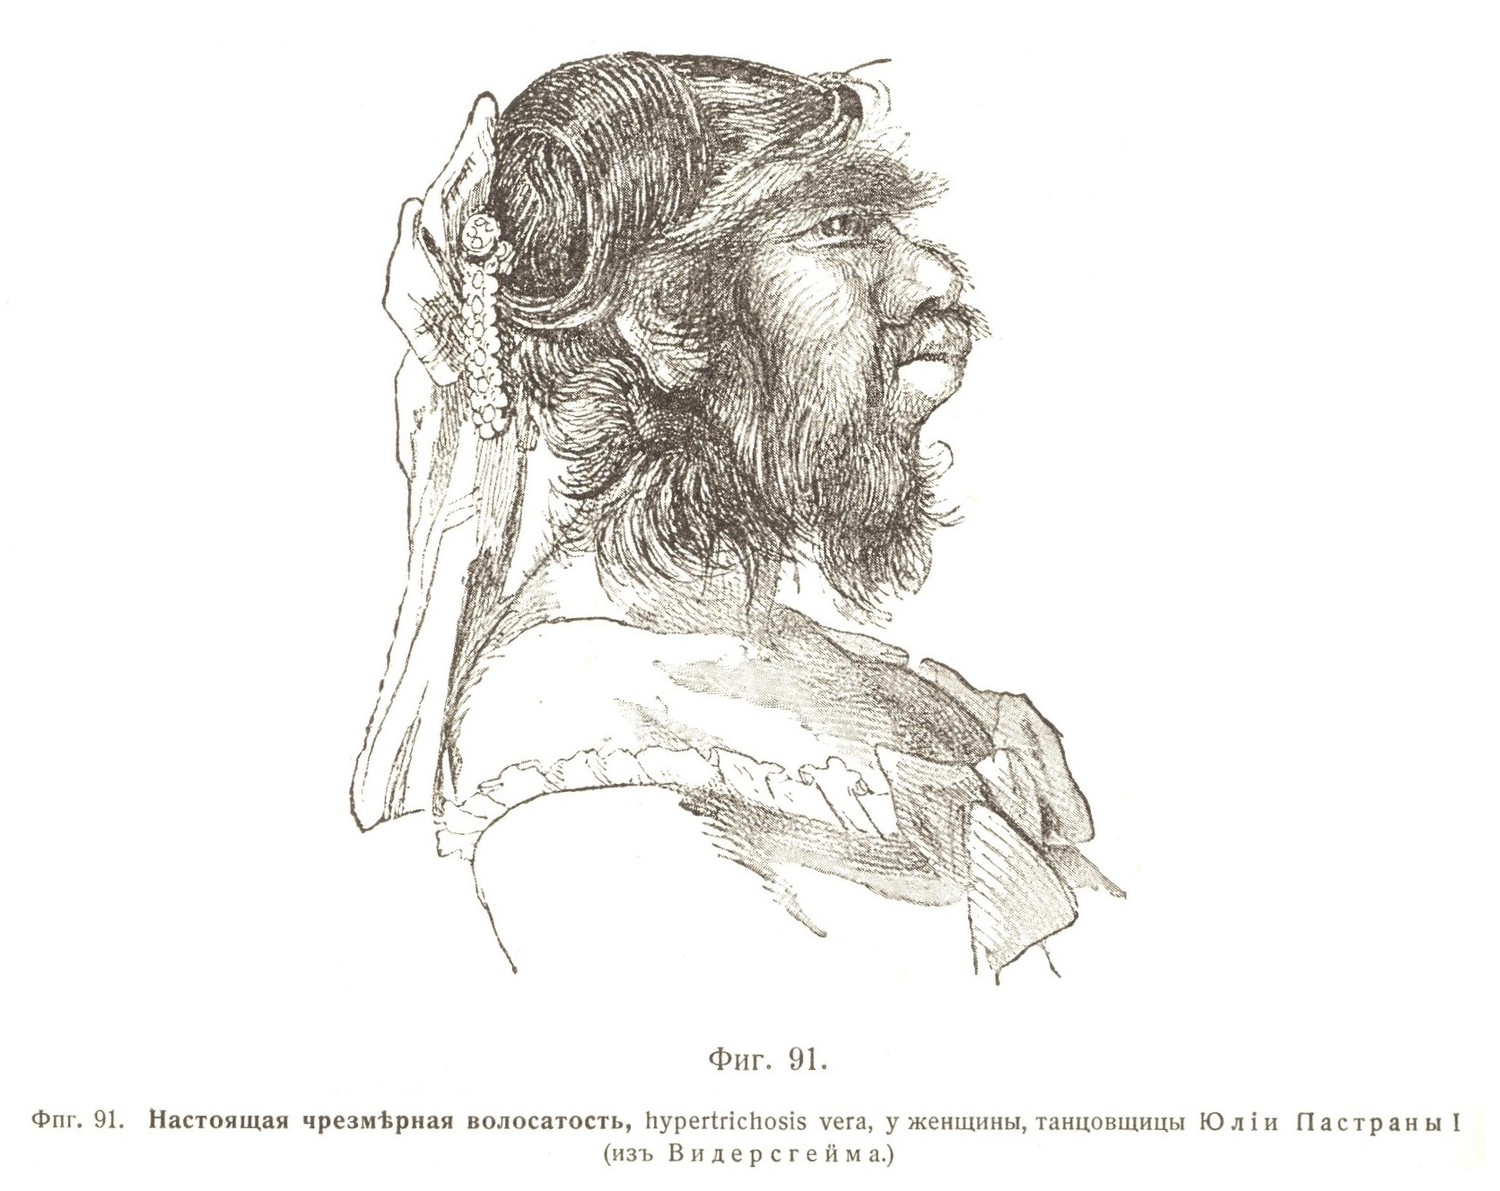 Настоящая чрезмѣрная волосатость, hypertrichosis vera, у женщины, танцовщицы Юліи Пастраны I